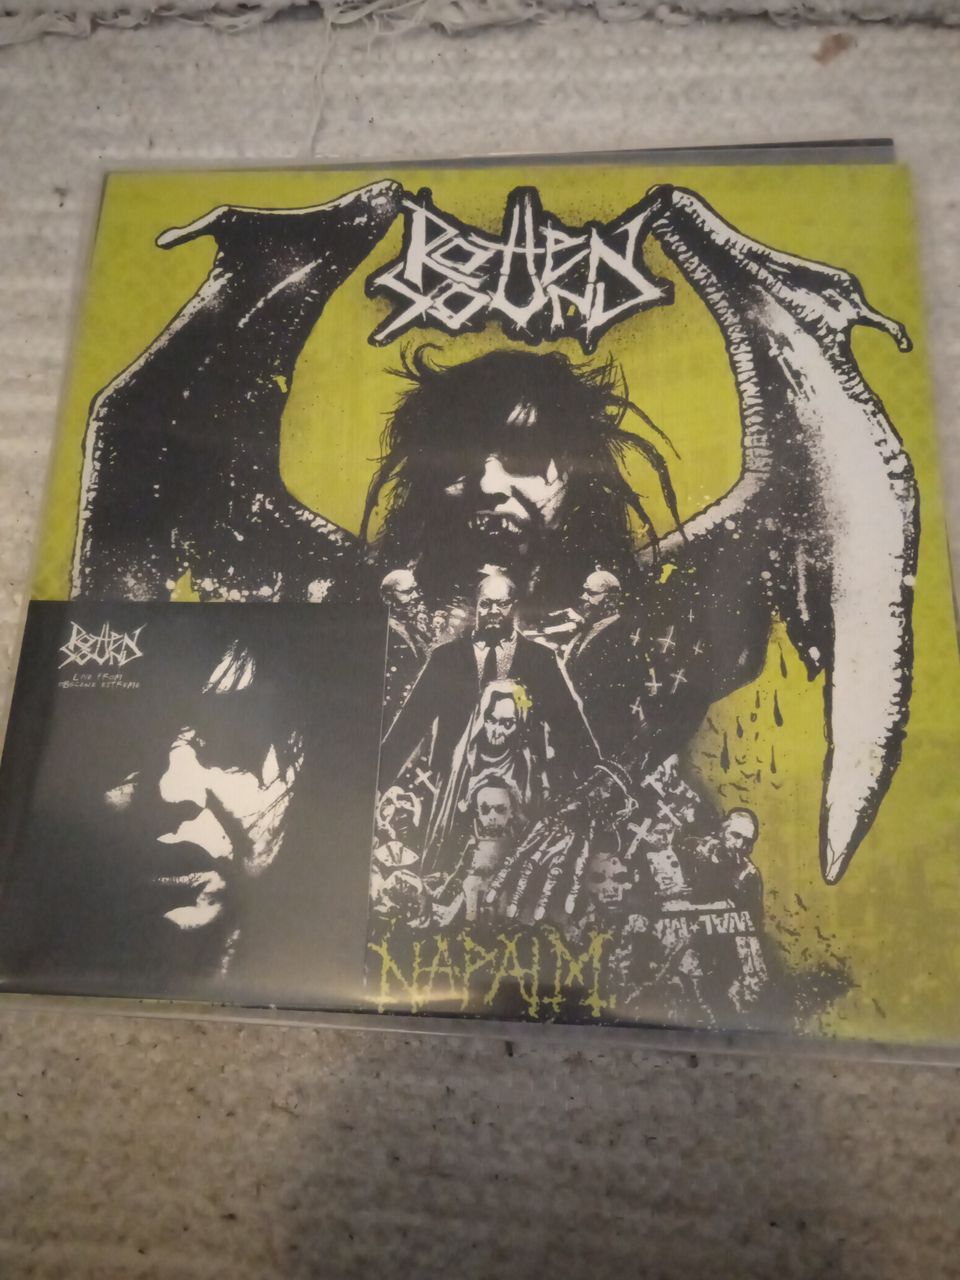 Rotten Sound - Napalm LP+DVD